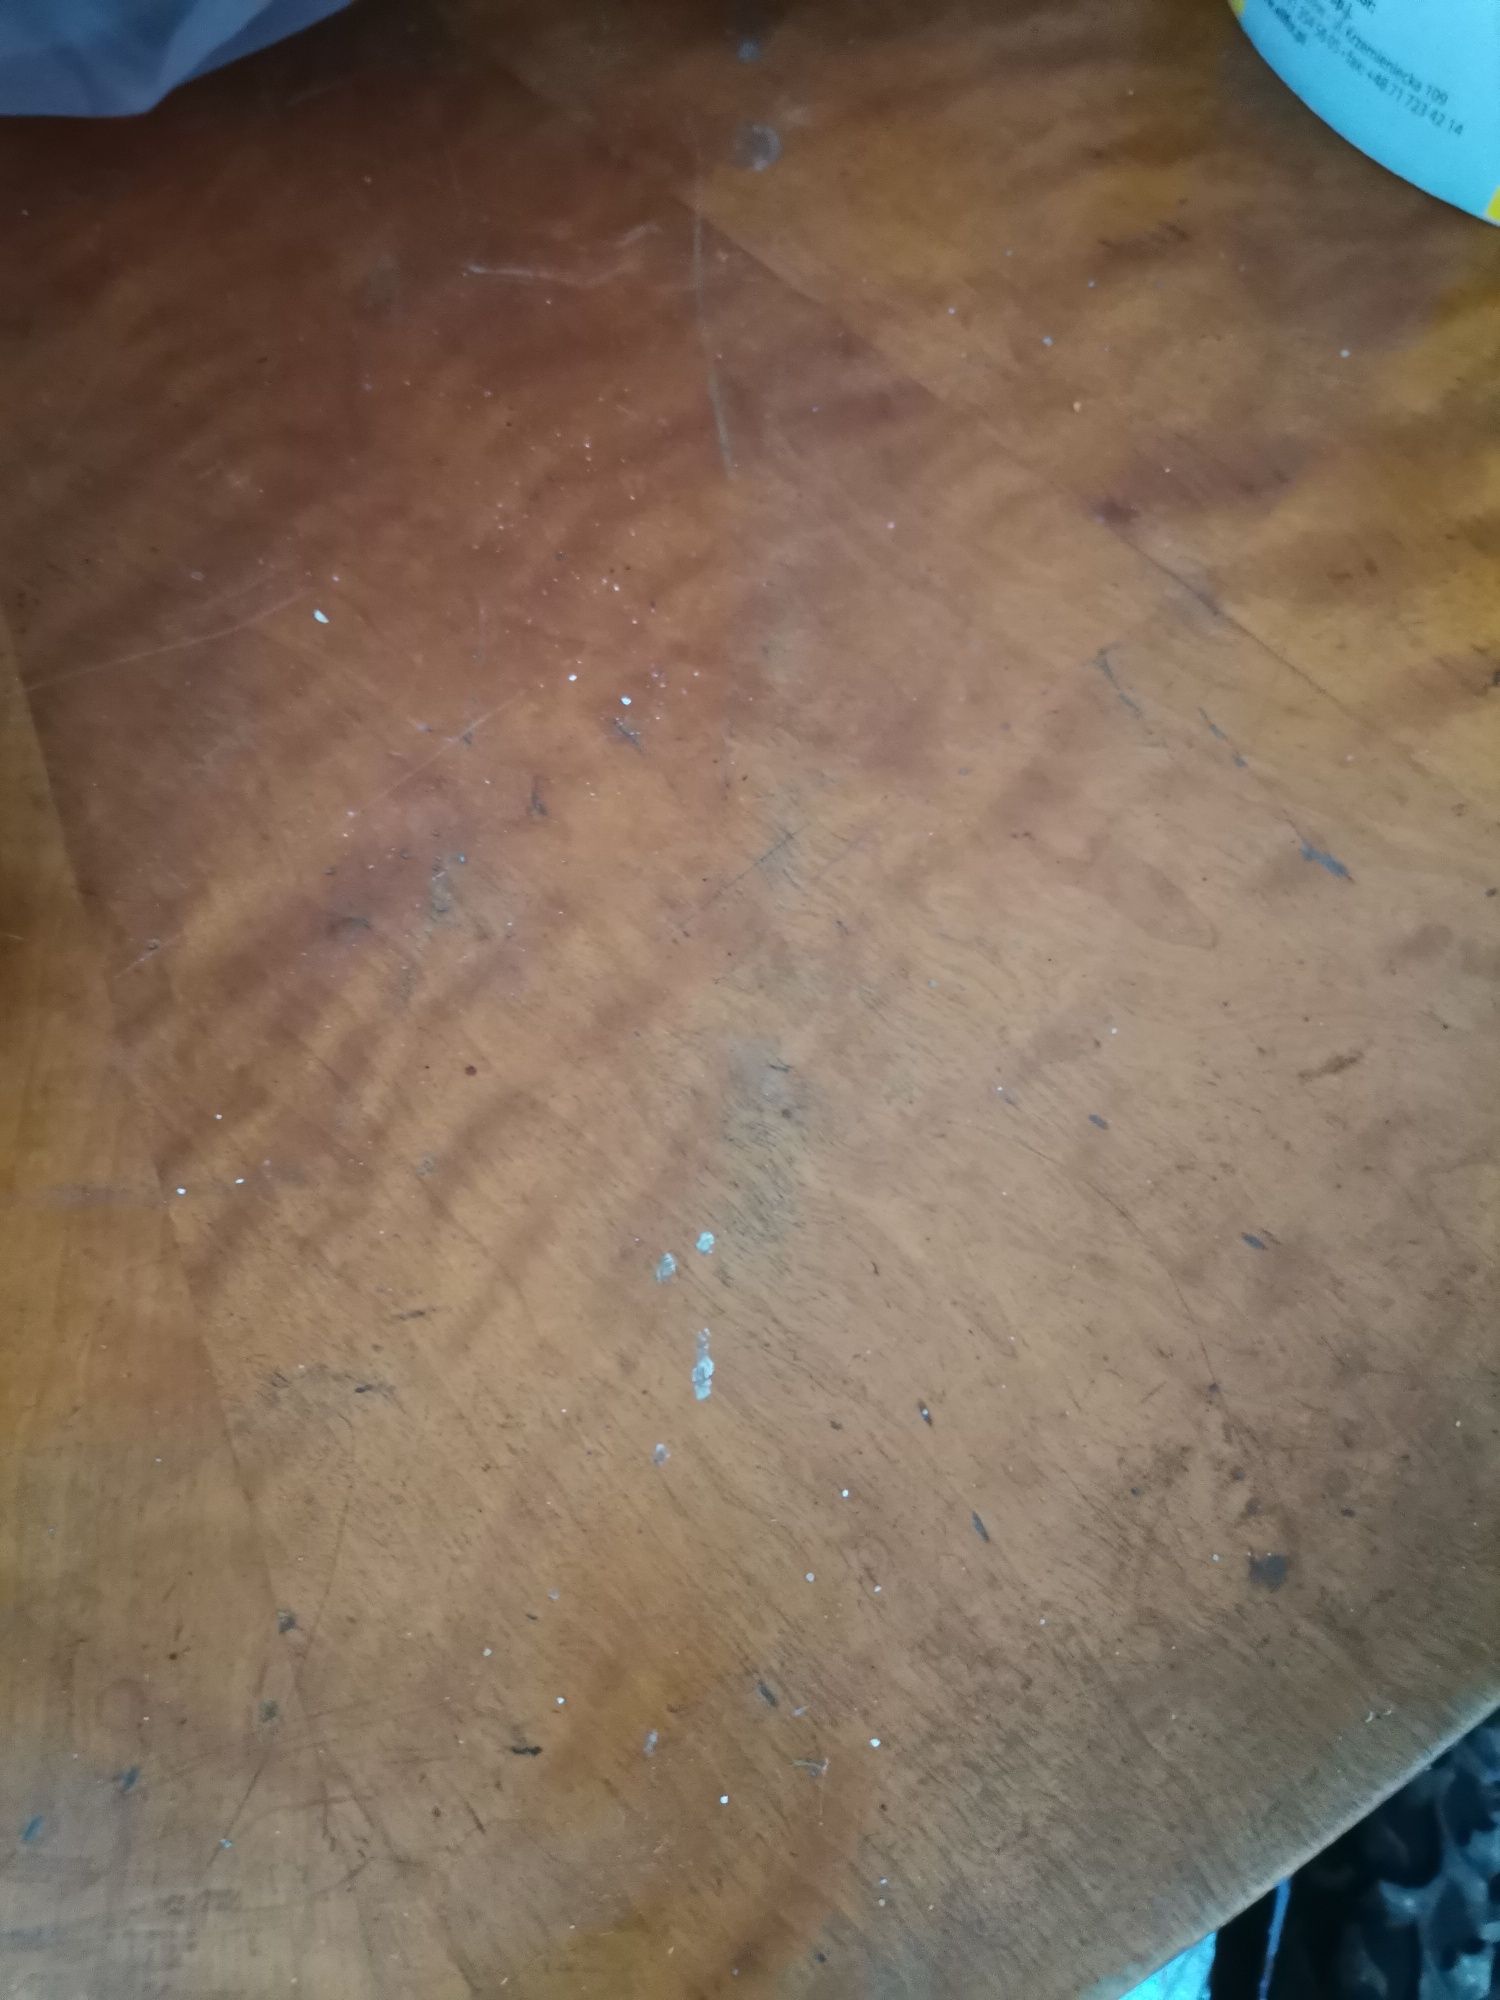 Stary stół do renowacji